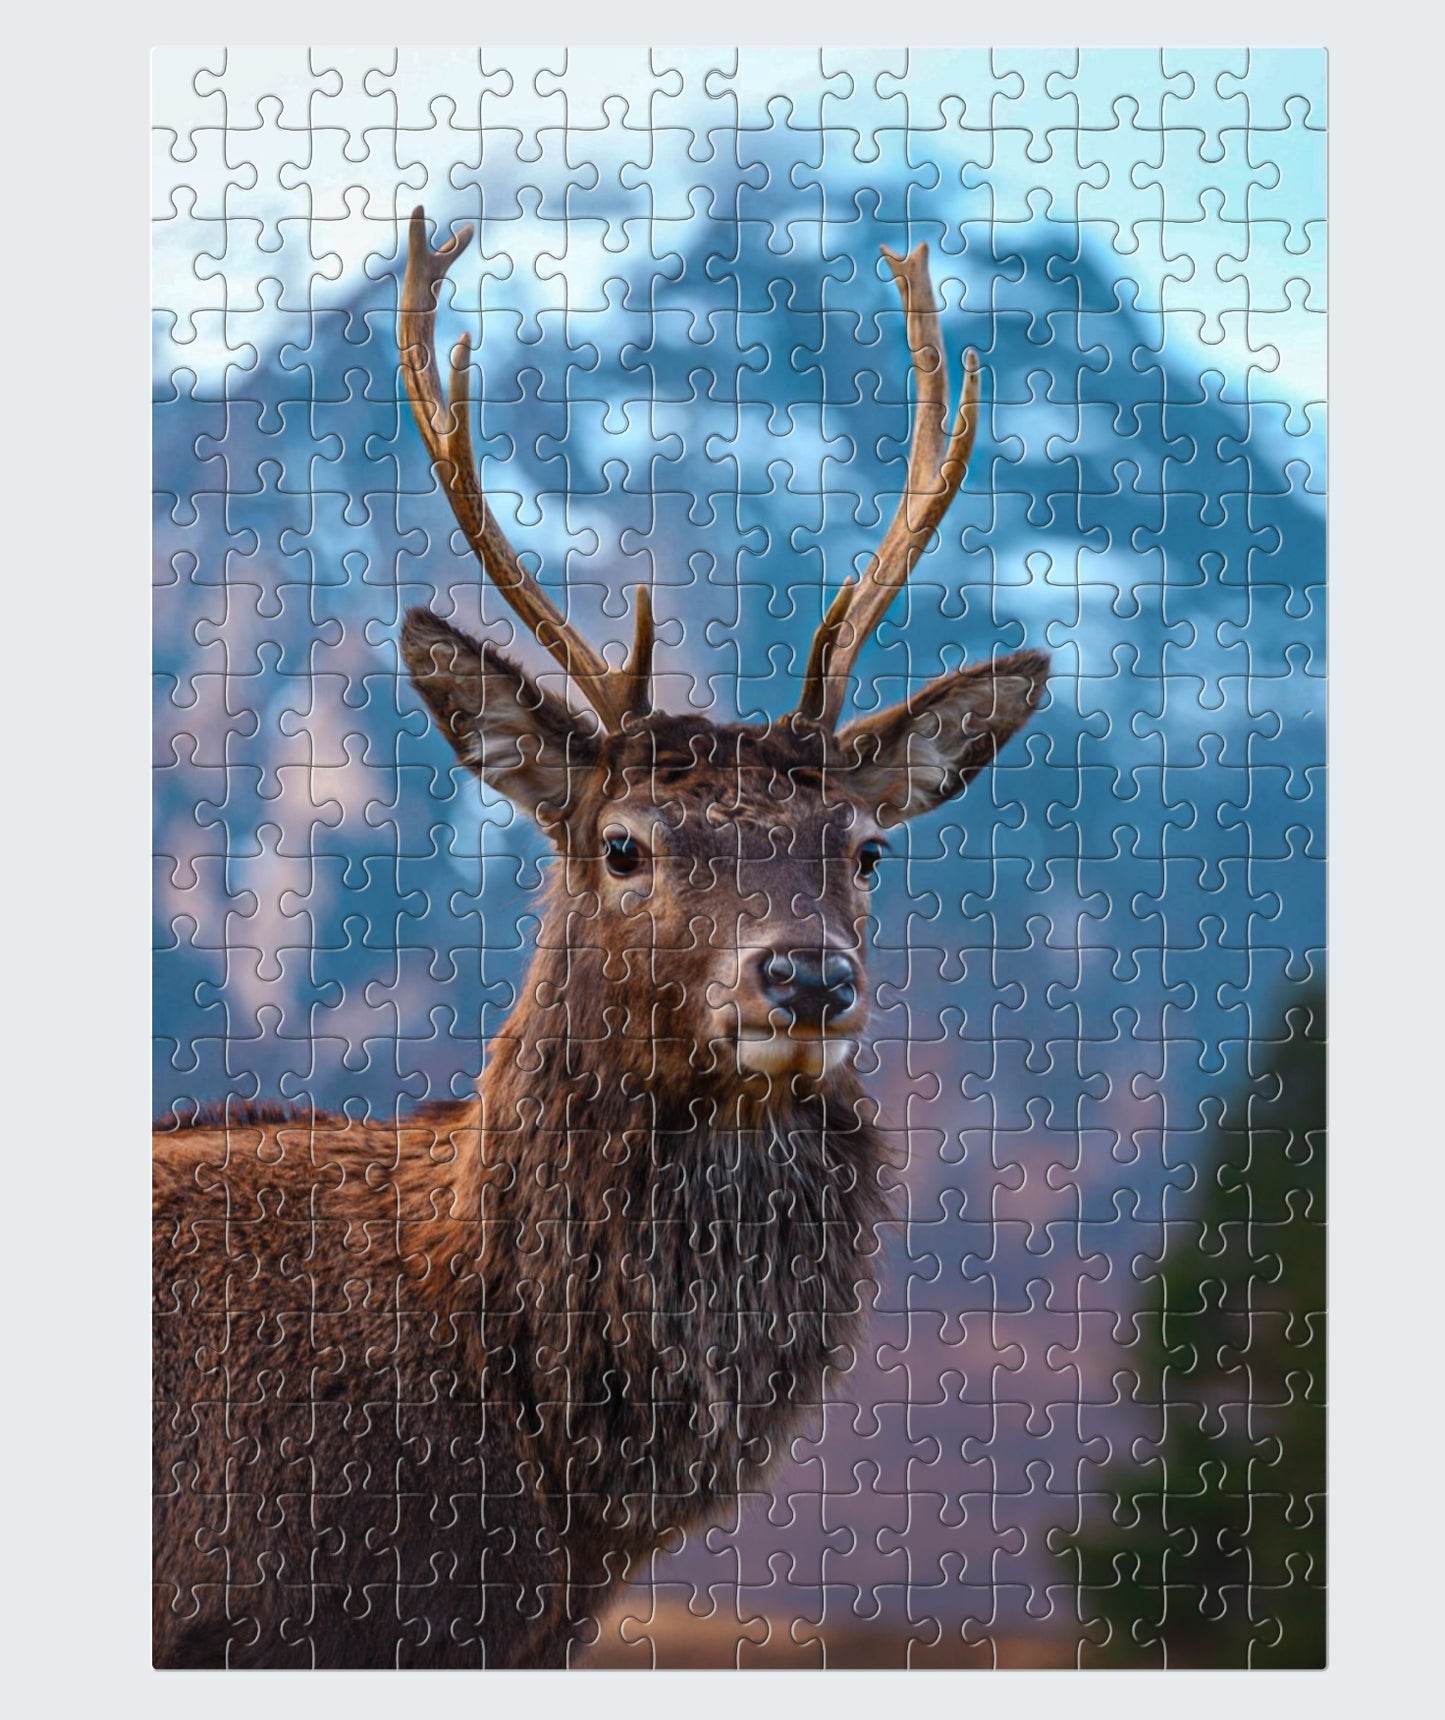 Jigsaw 20 x 29cm 98 piece